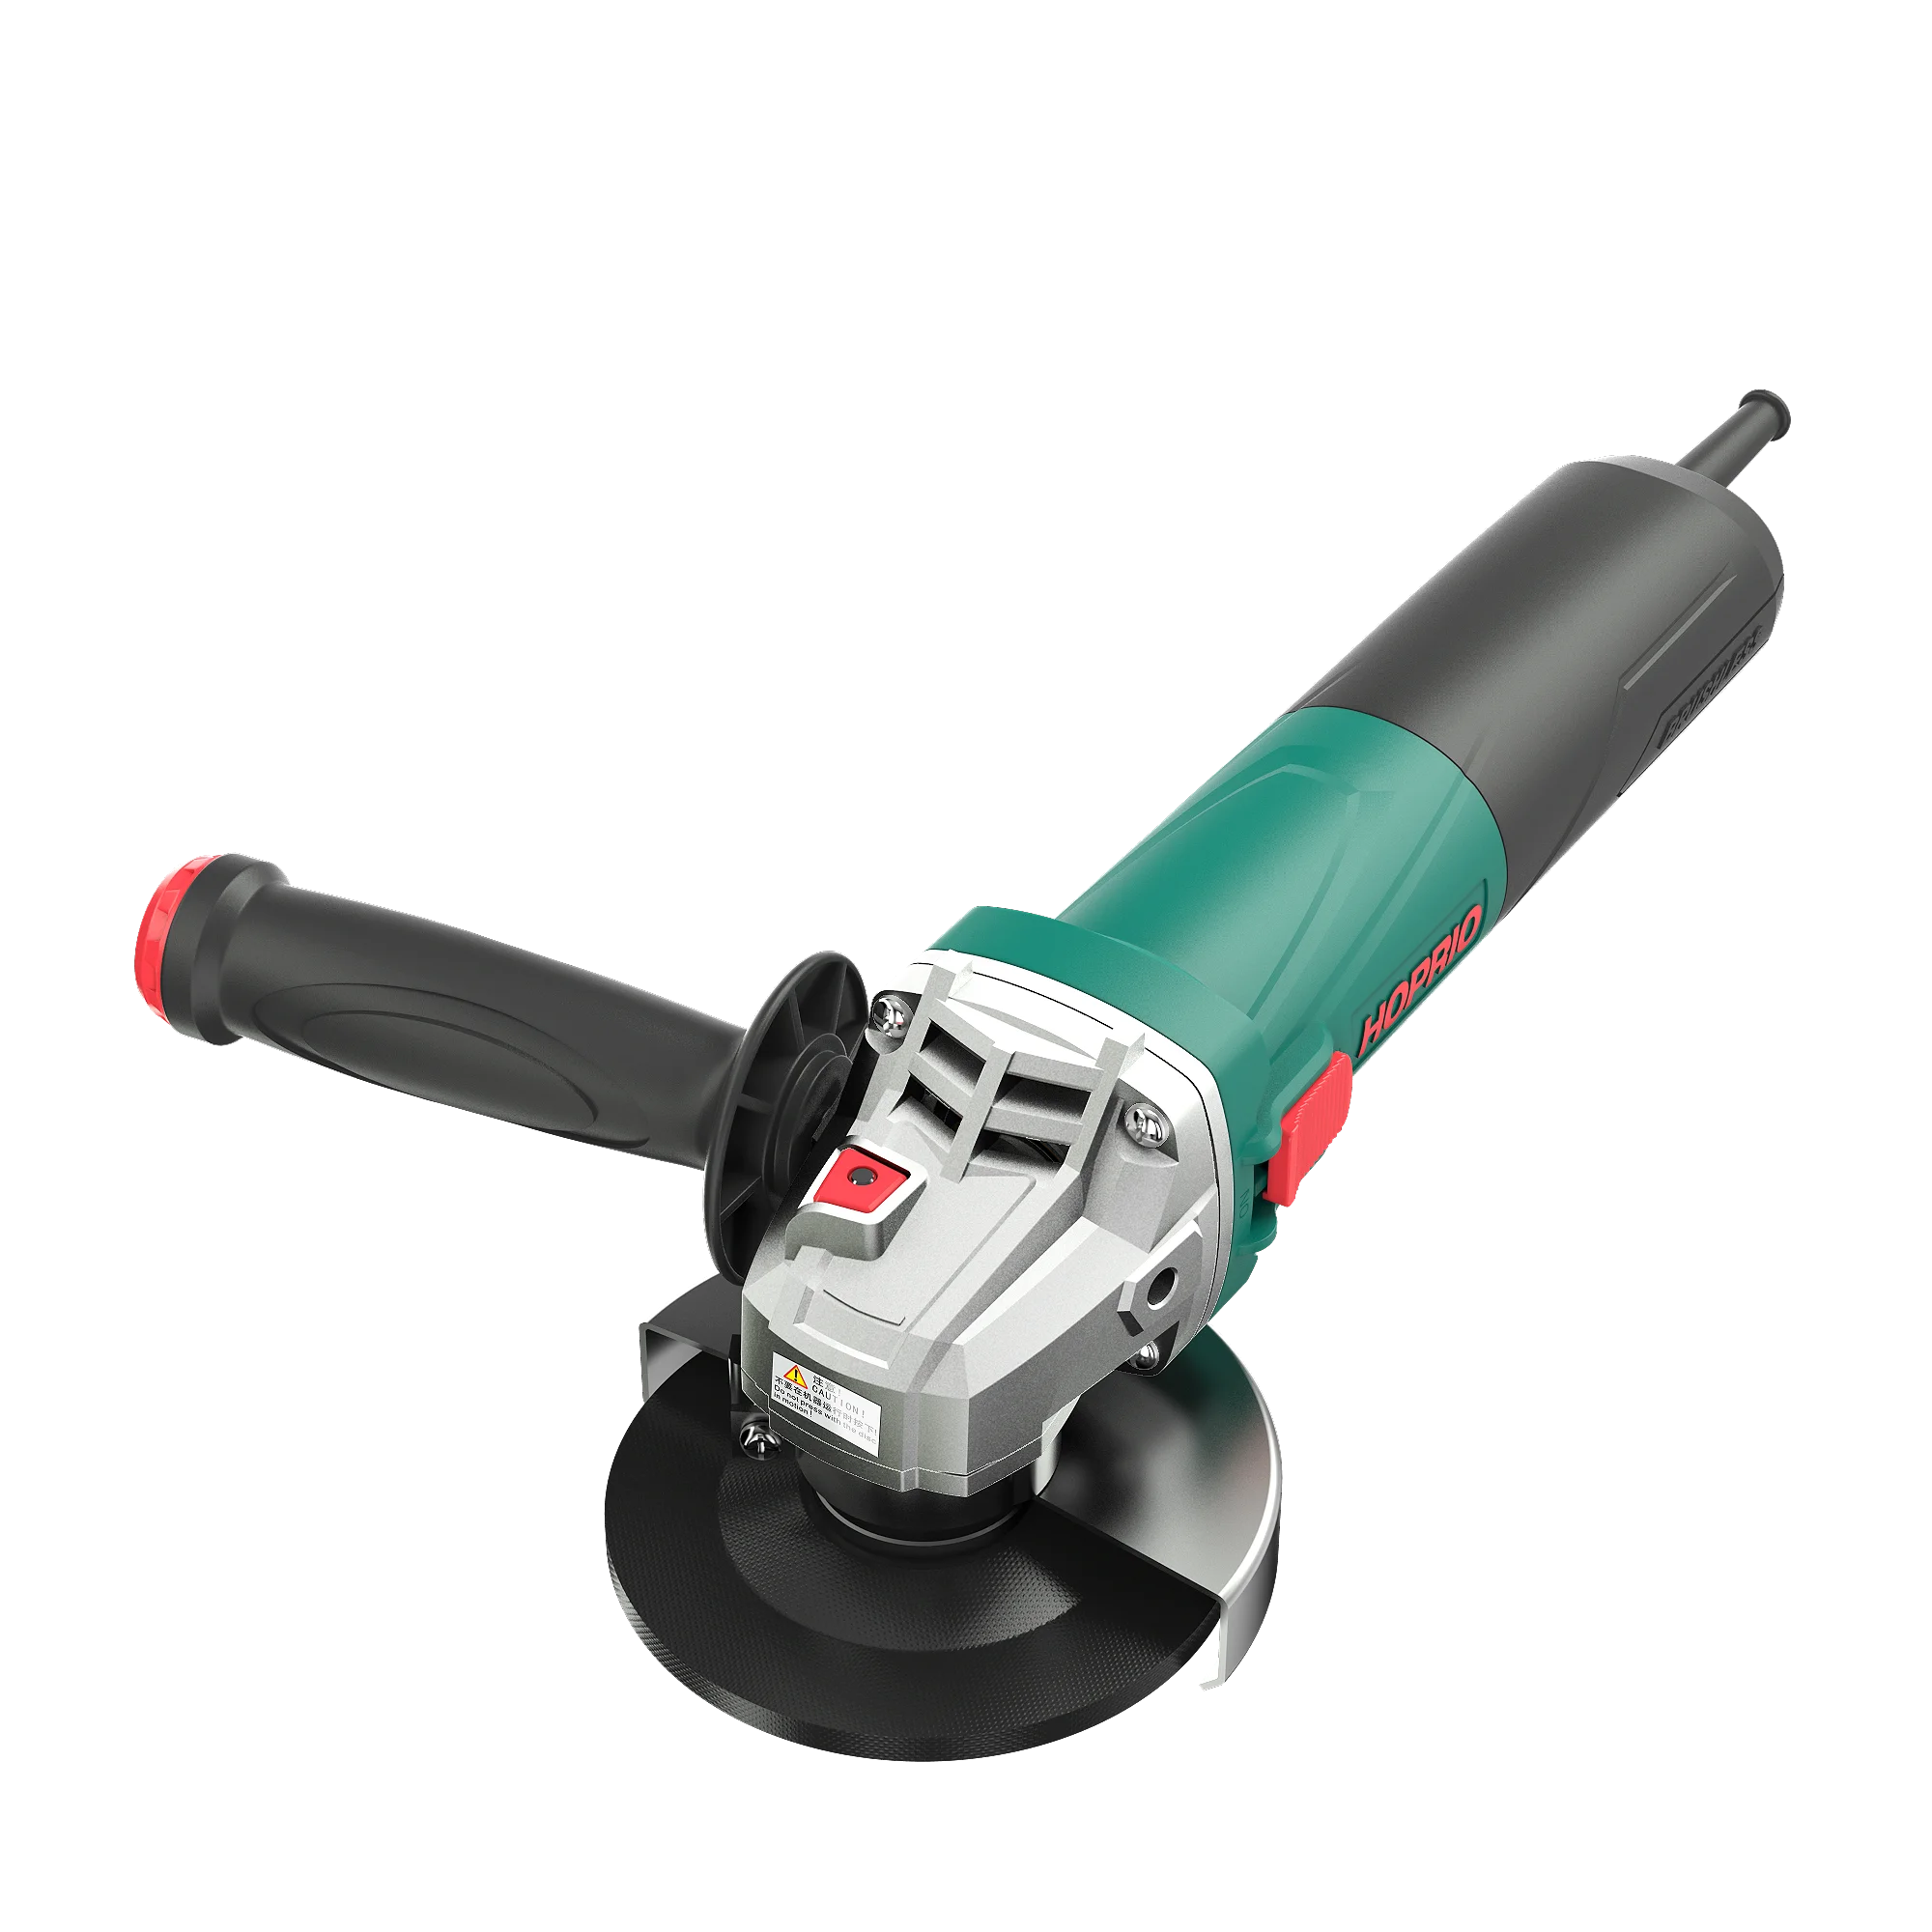 

115mm 220-240V 1350W 12000r/min brushless angle grinder